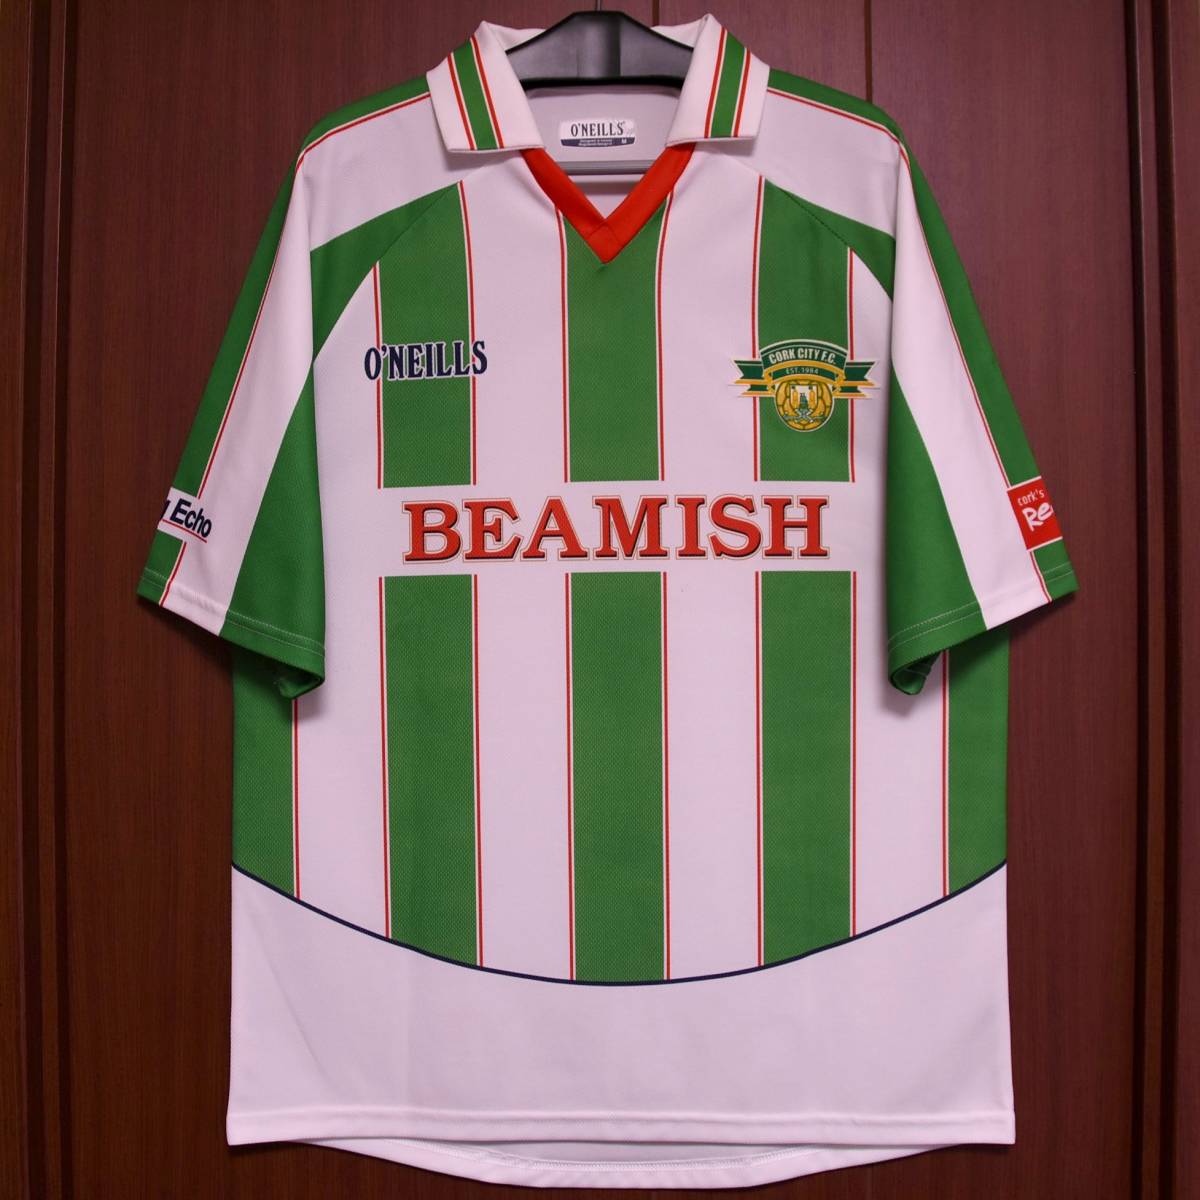 [送料185円] O'Neills 2007 Cork City FC ユニフォーム / アイルランド コークシティ サッカー 代表 ireland Football Shirts jerseys kit_画像1